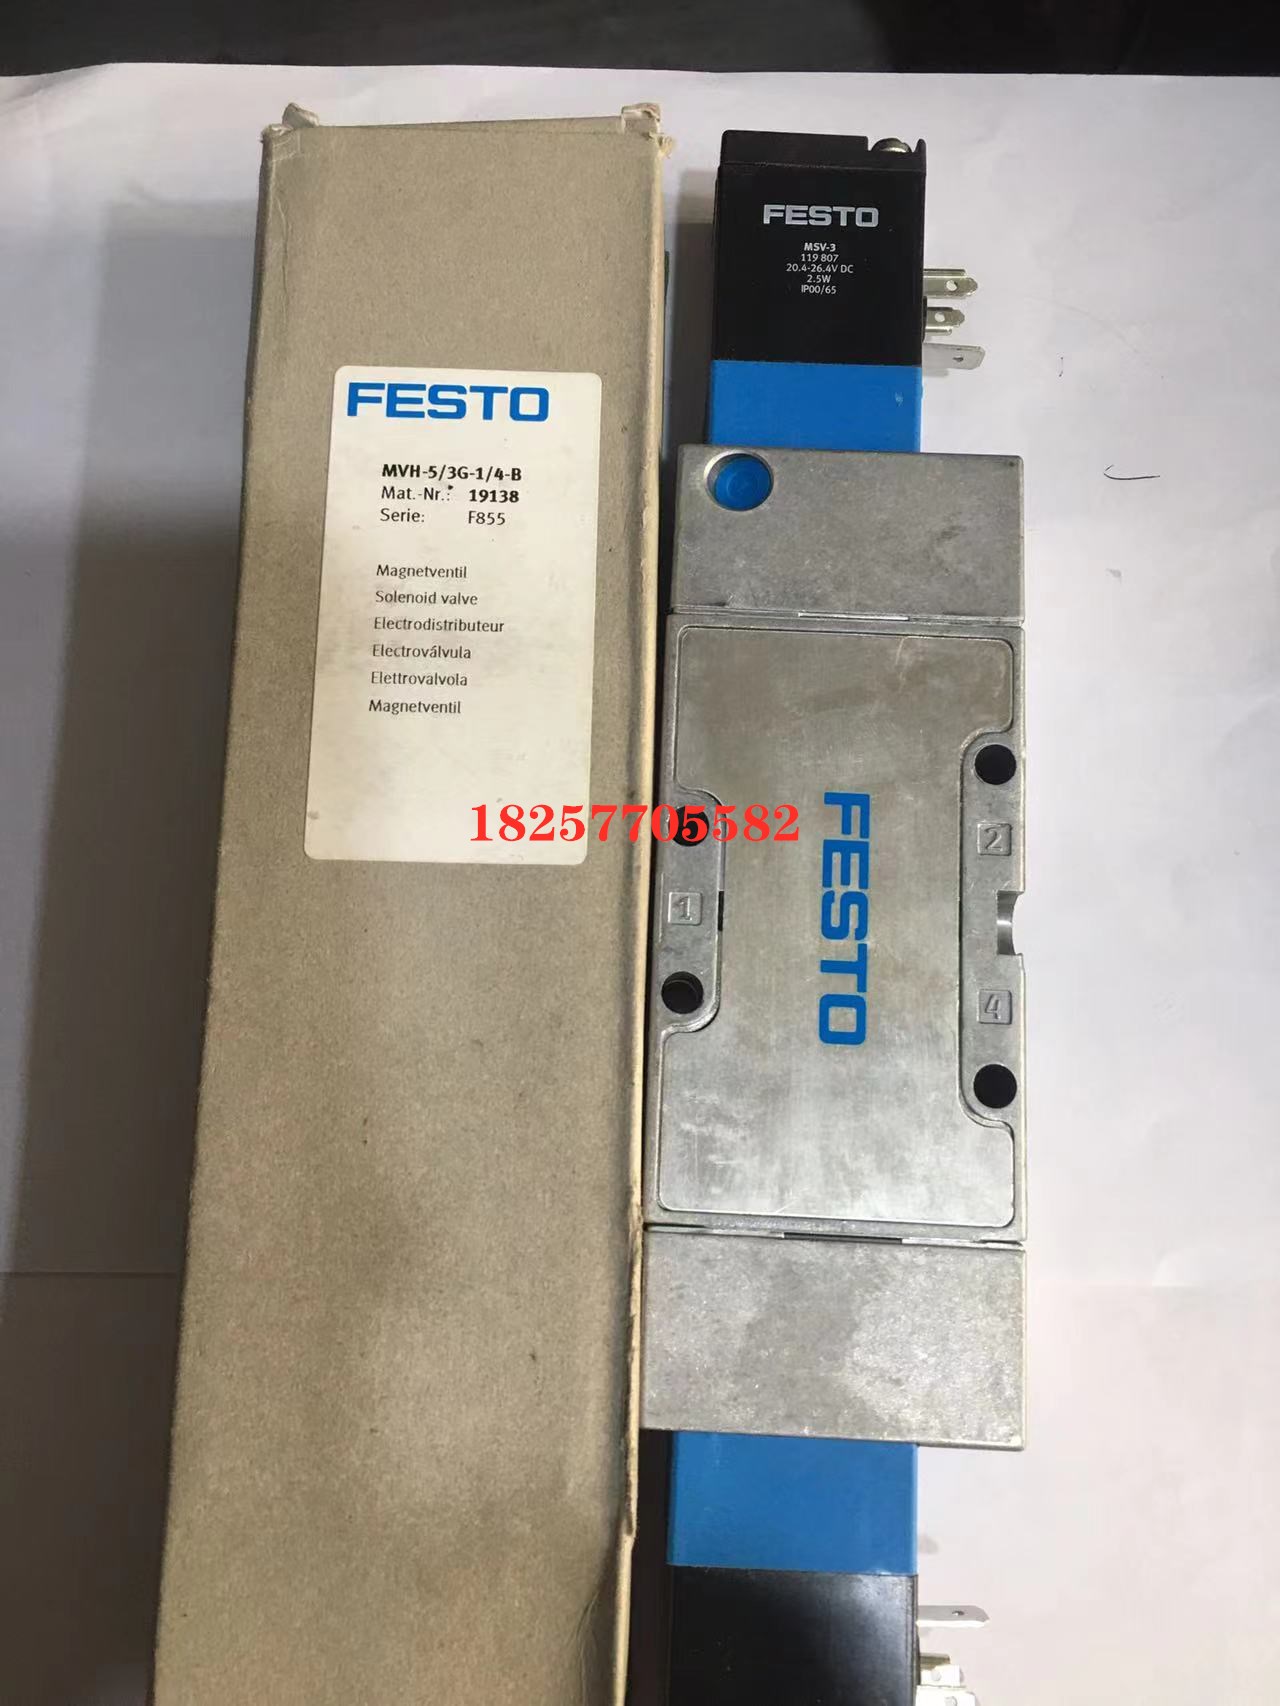 促销FESTO/费斯托 电磁阀MVH-5/3G-1/4-B 19138 现货 标准件/零部件/工业耗材 其他气动元件 原图主图